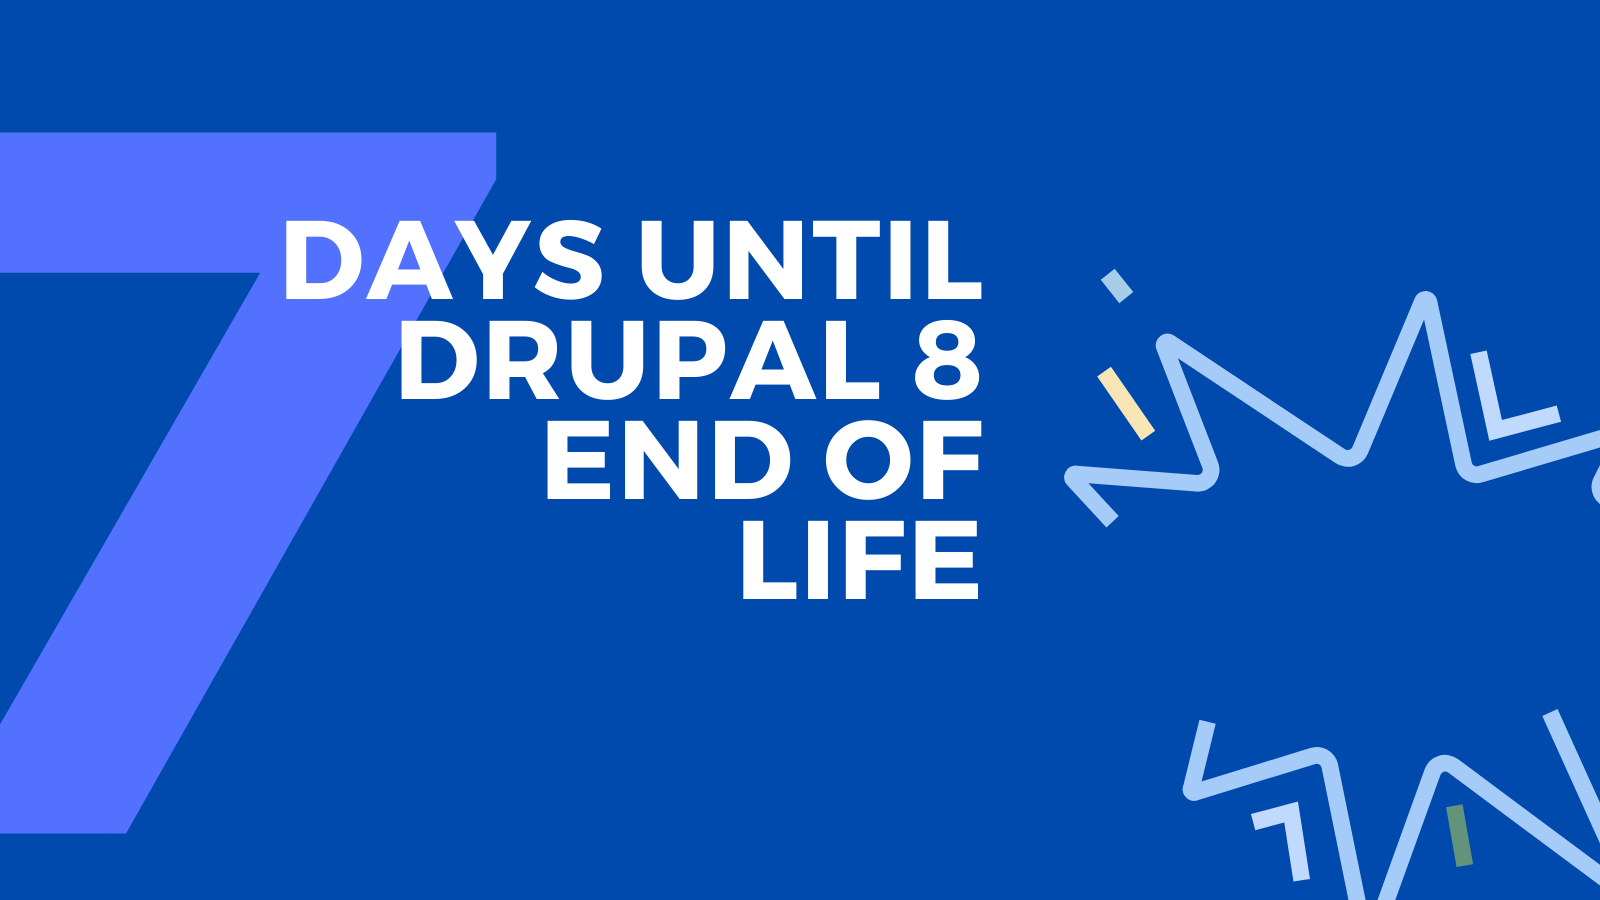 Seven days until Drupal 8 End of Life